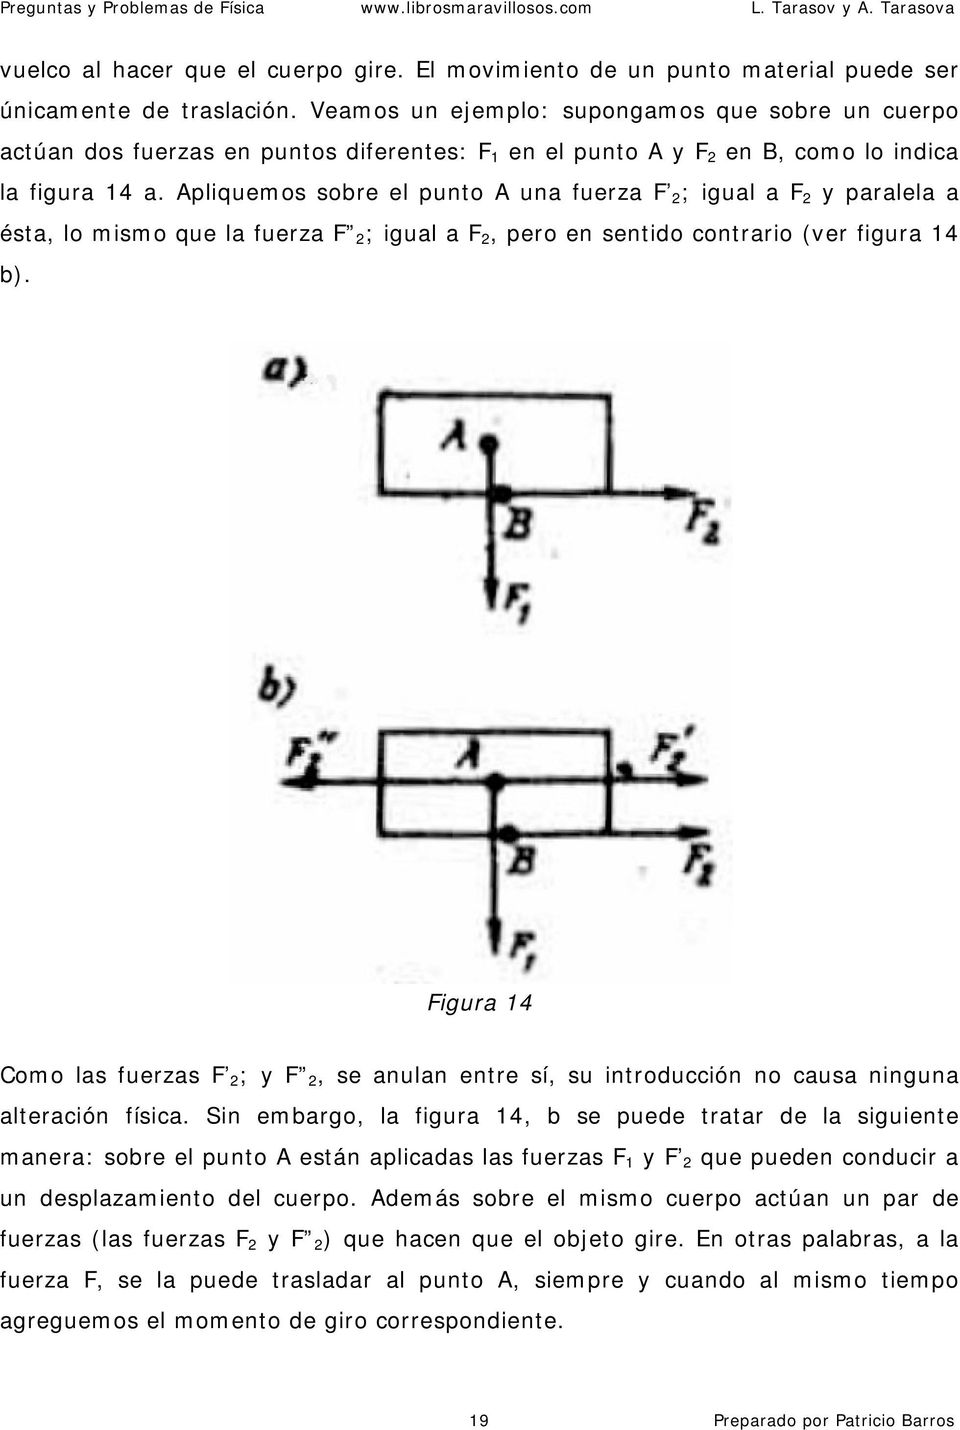 Apliquemos sobre el punto A una fuerza F 2 ; igual a F 2 y paralela a ésta, lo mismo que la fuerza F 2 ; igual a F 2, pero en sentido contrario (ver figura 14 b).